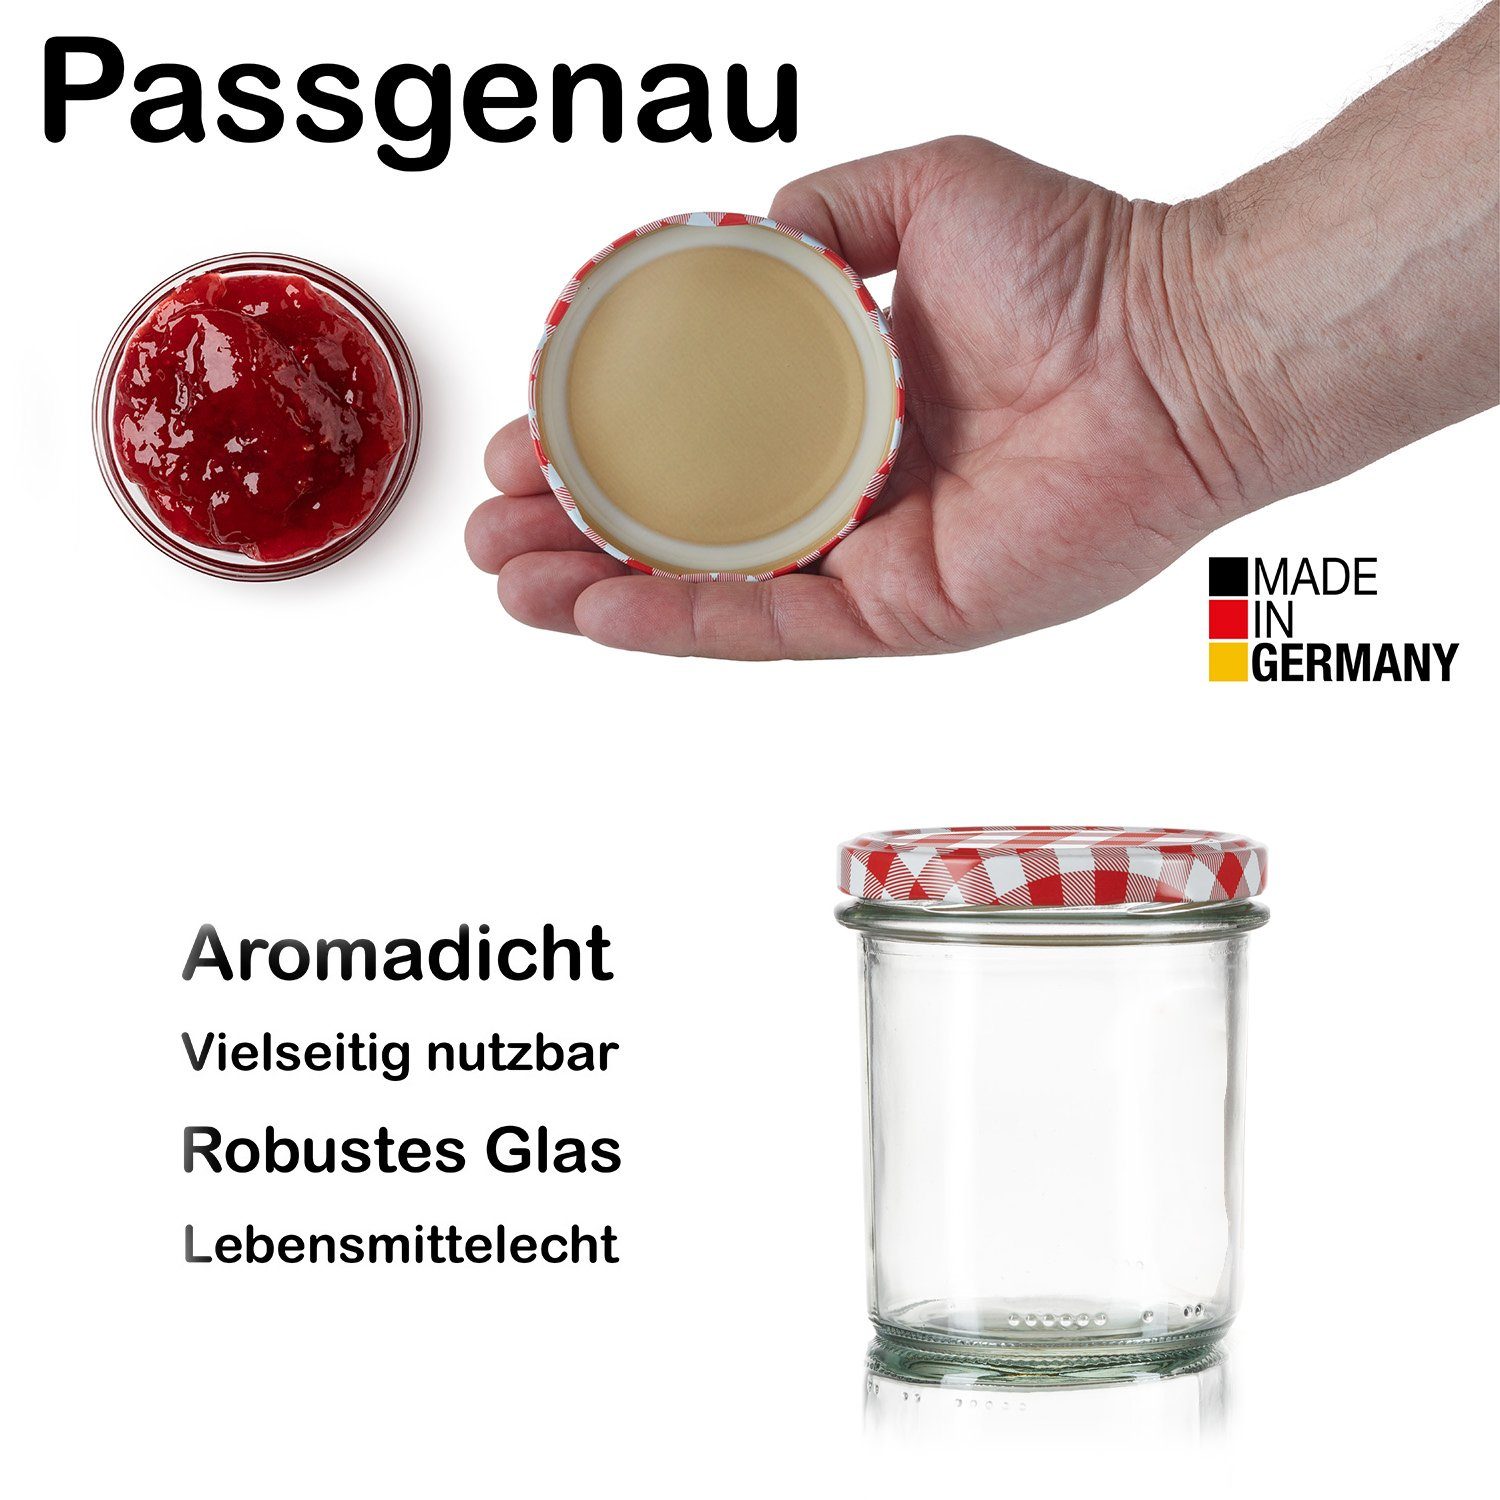 TO 363ml 12x BigDean Einkochgläser Made Germany, Sturzgläser Glas, 82 Einmachglas in (12-tlg)